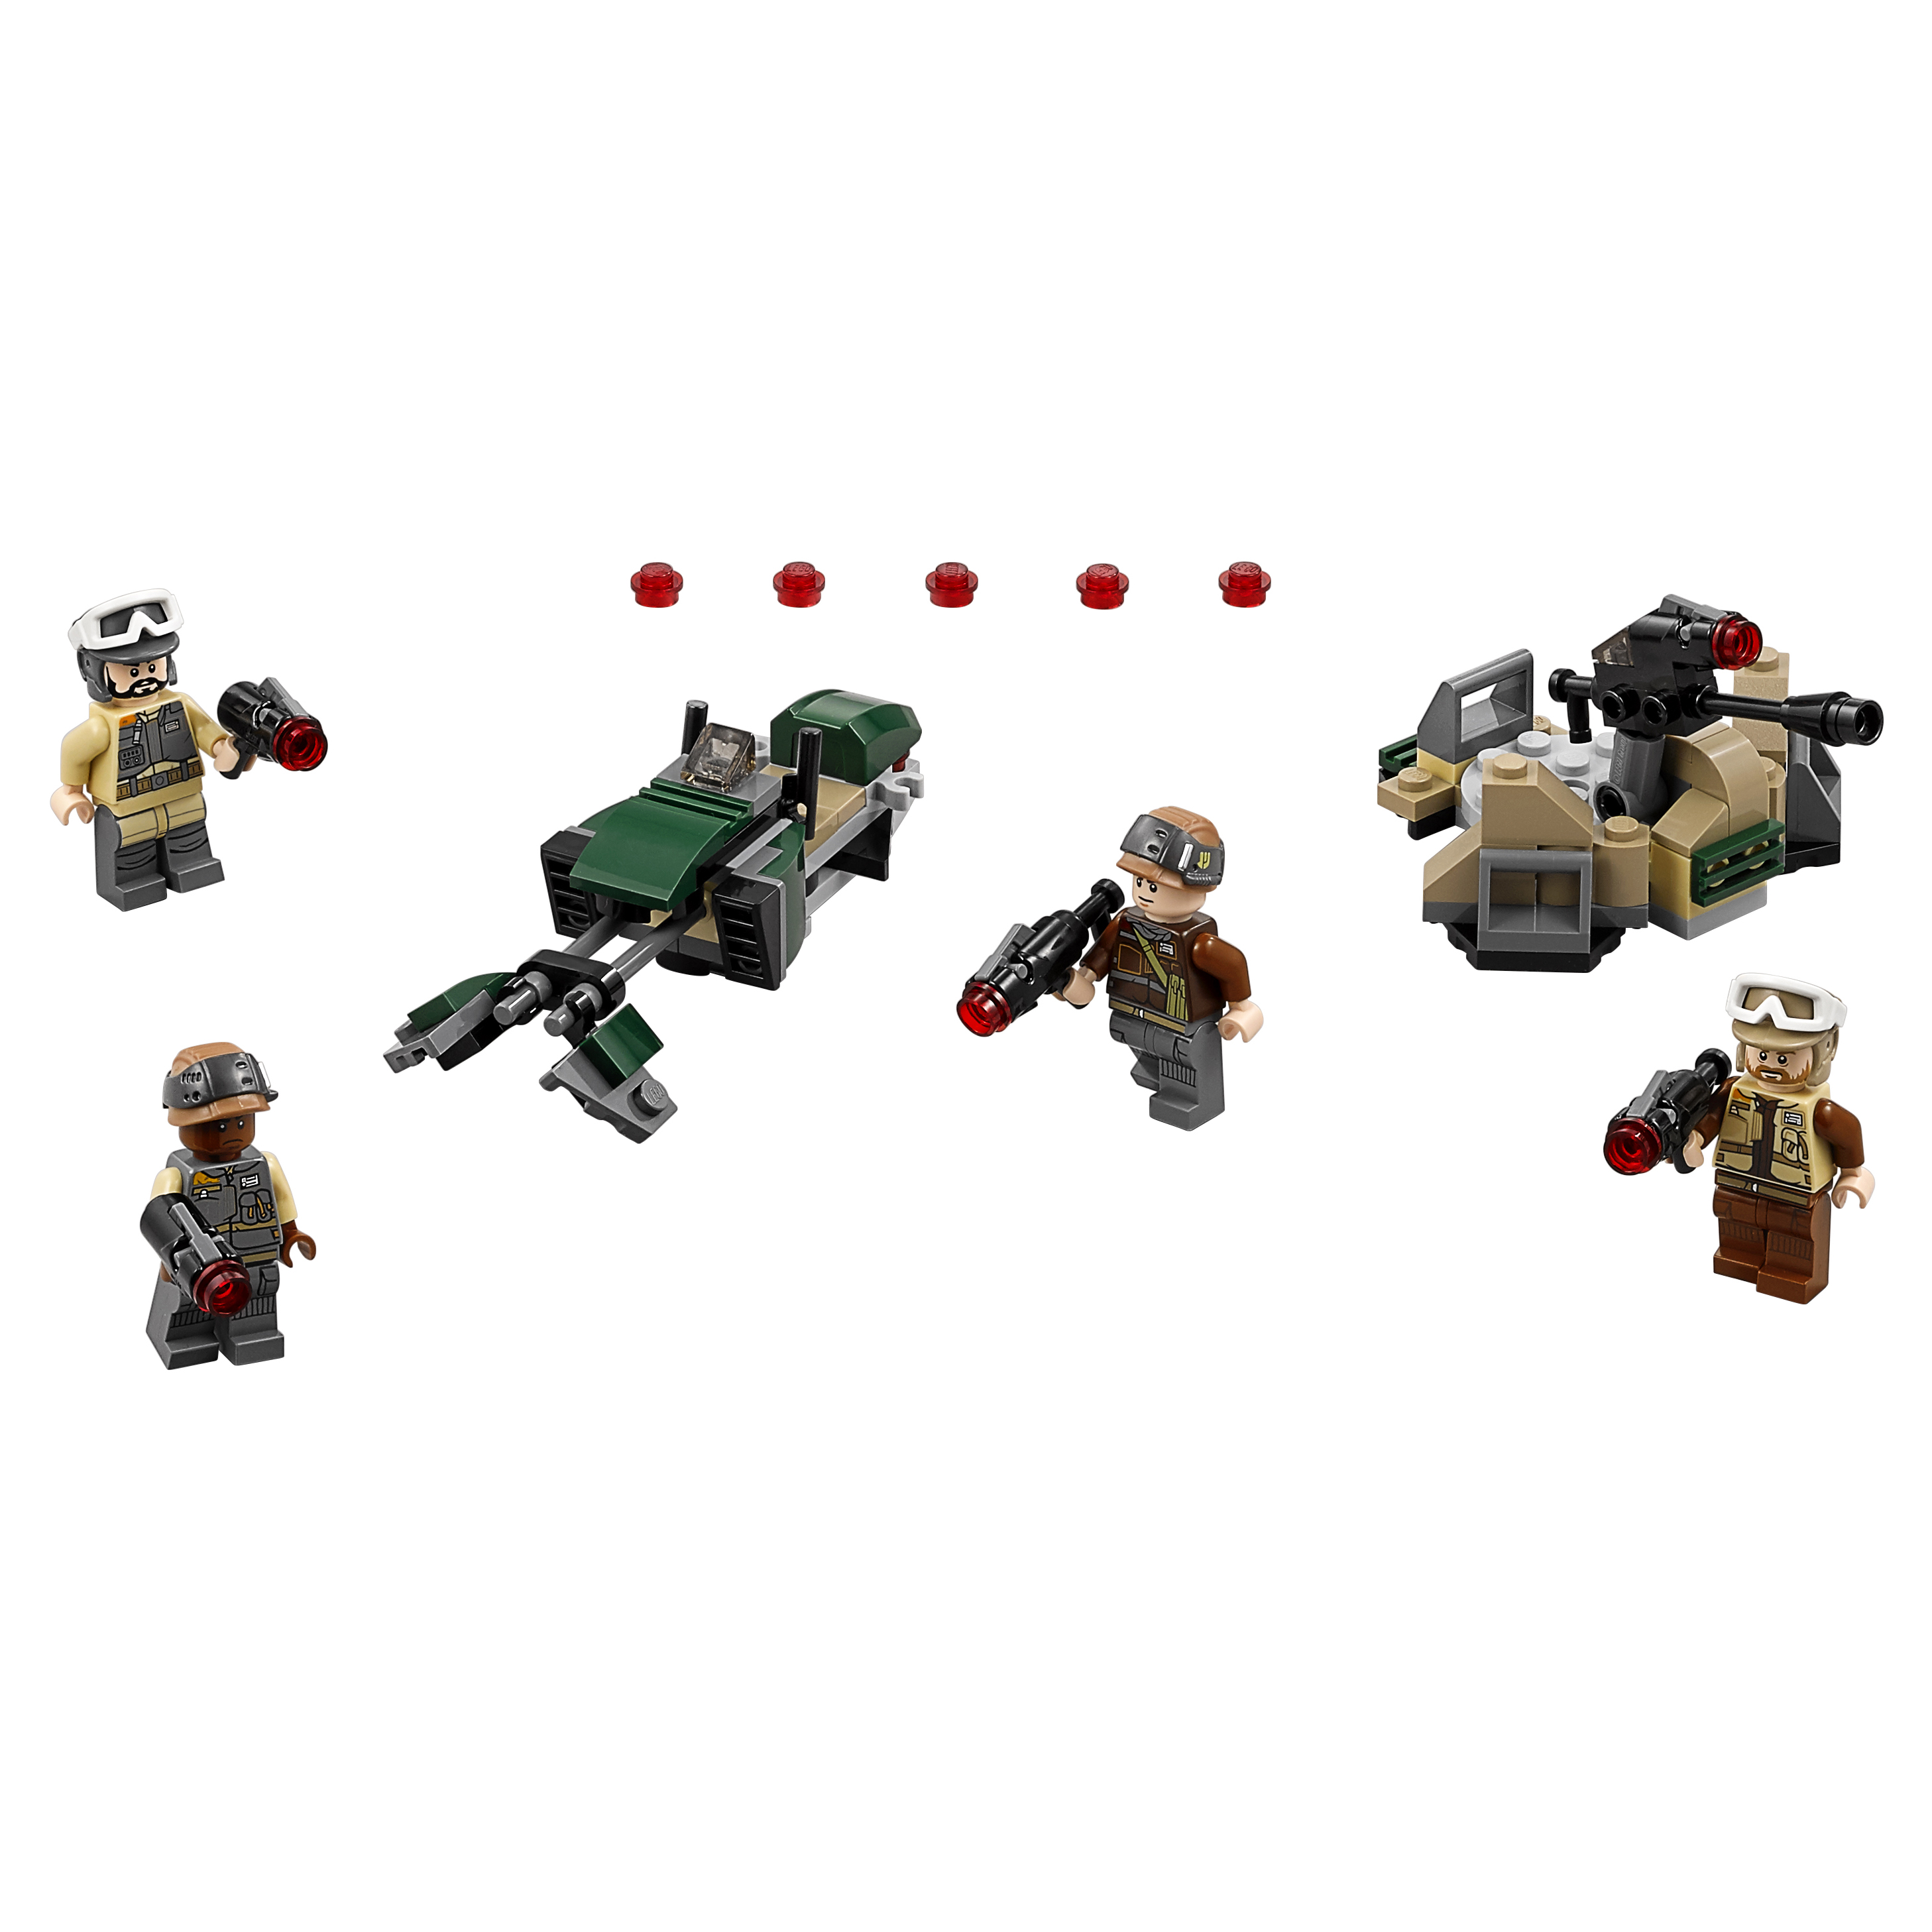 Конструктор LEGO Star Wars Боевой набор Повстанцев (75164) конструктор lego star wars база повстанцев явин 4 1066 деталей 75365